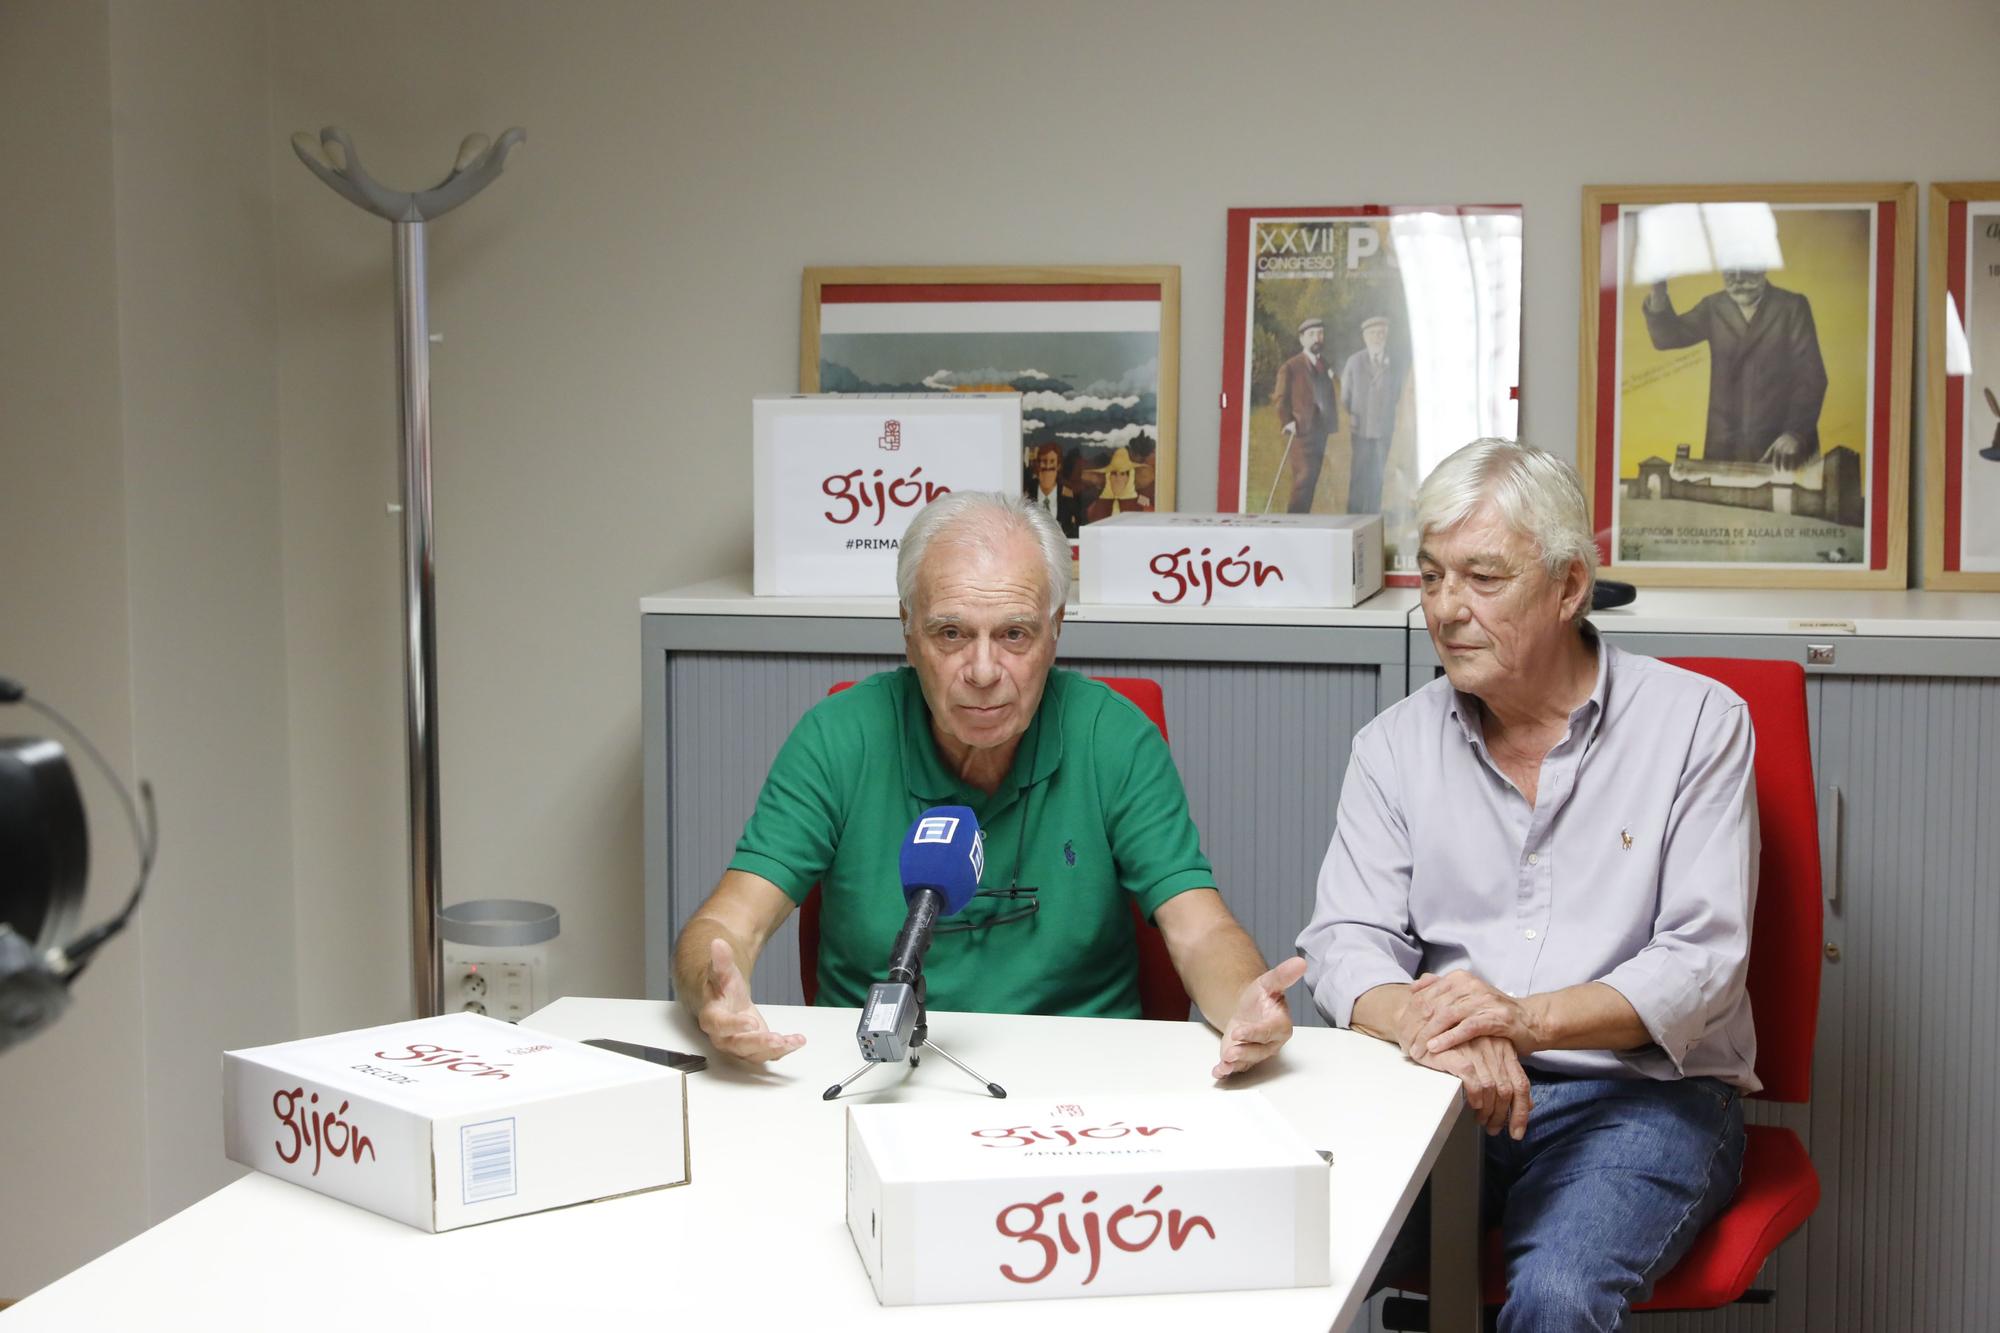 En imágenes: Jornada de recogida de firmas en la sede del PSOE de Gijón